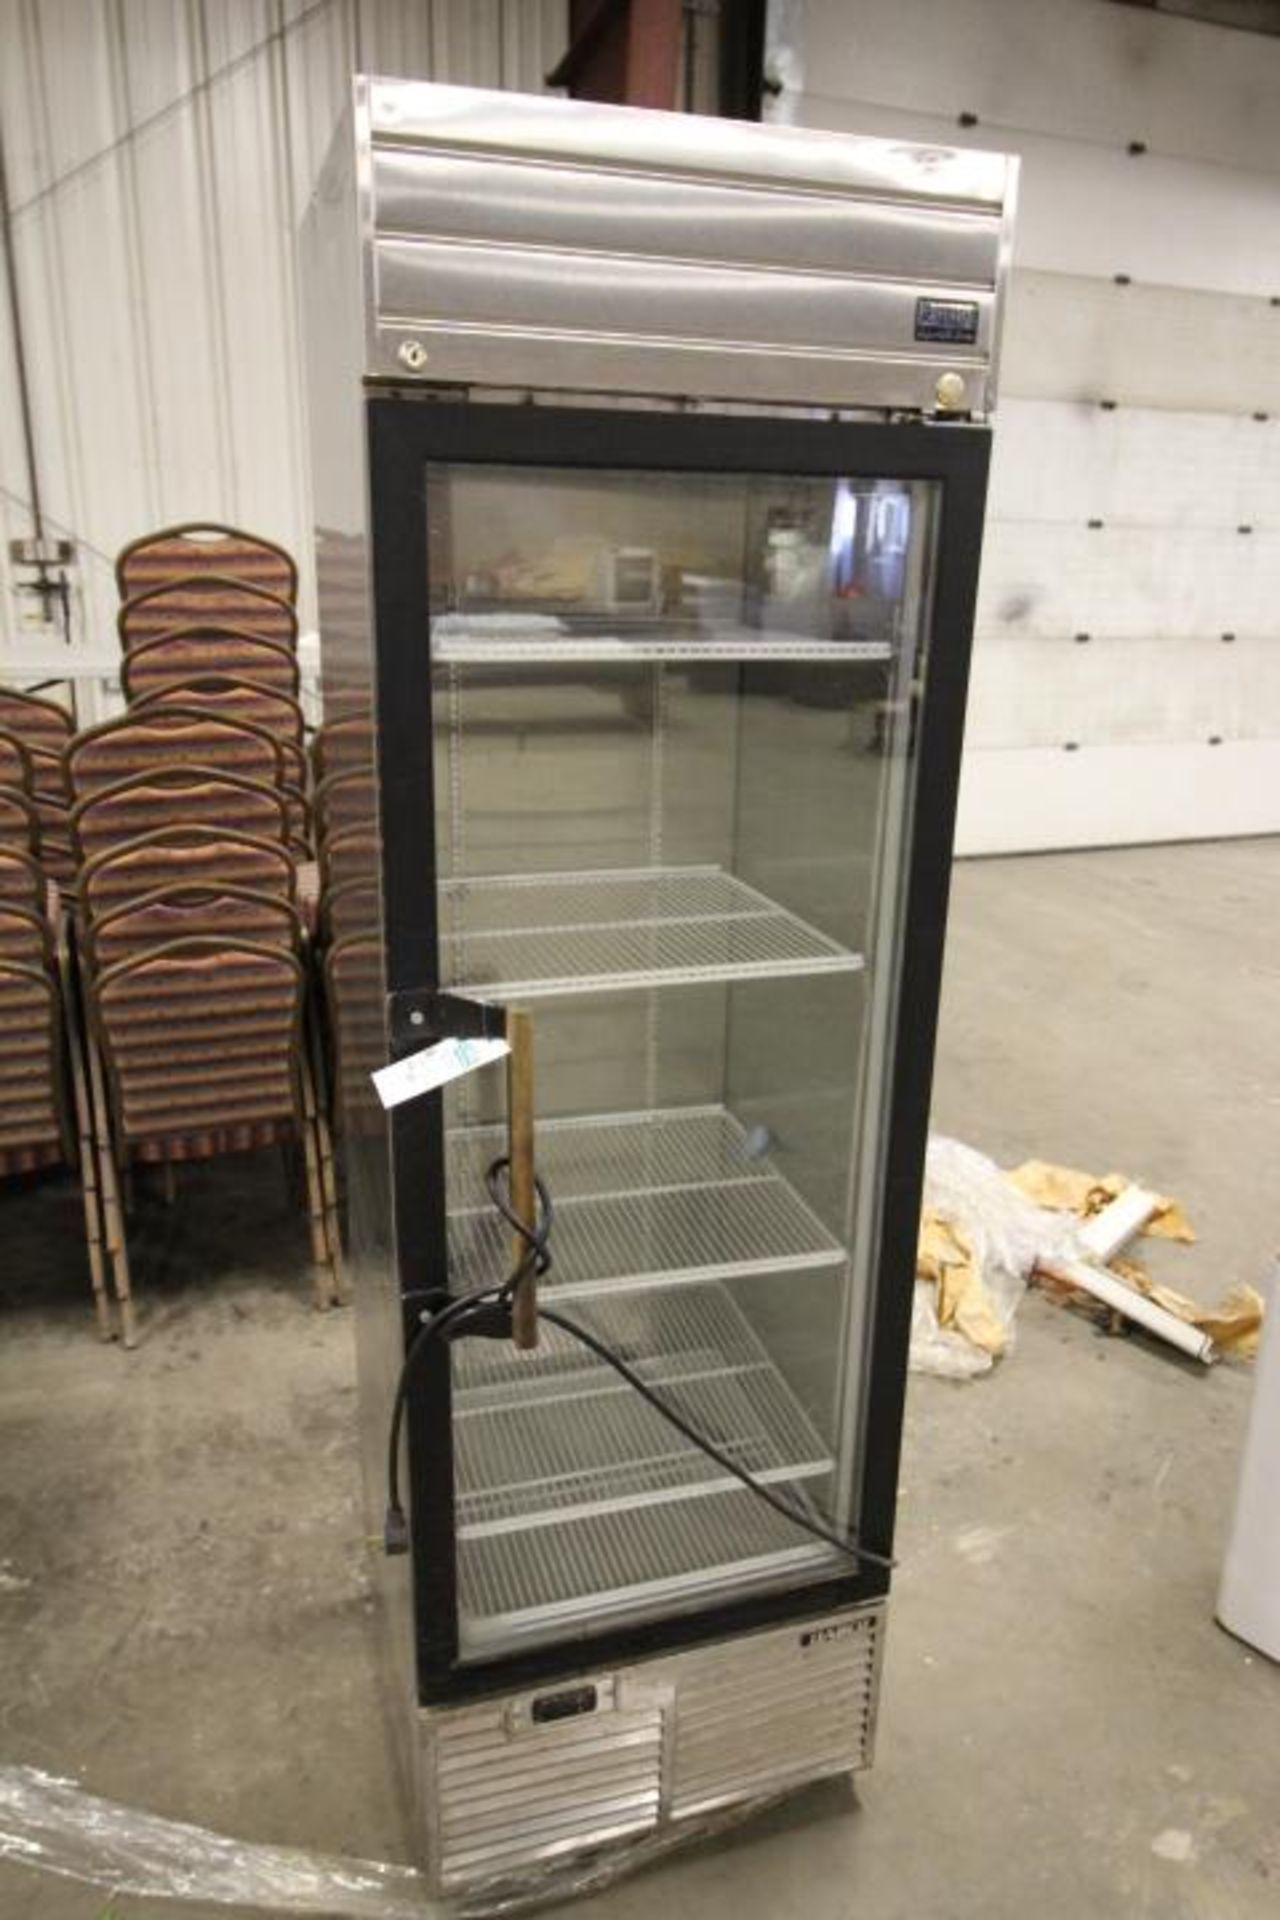 Habco Glass Door Cooler